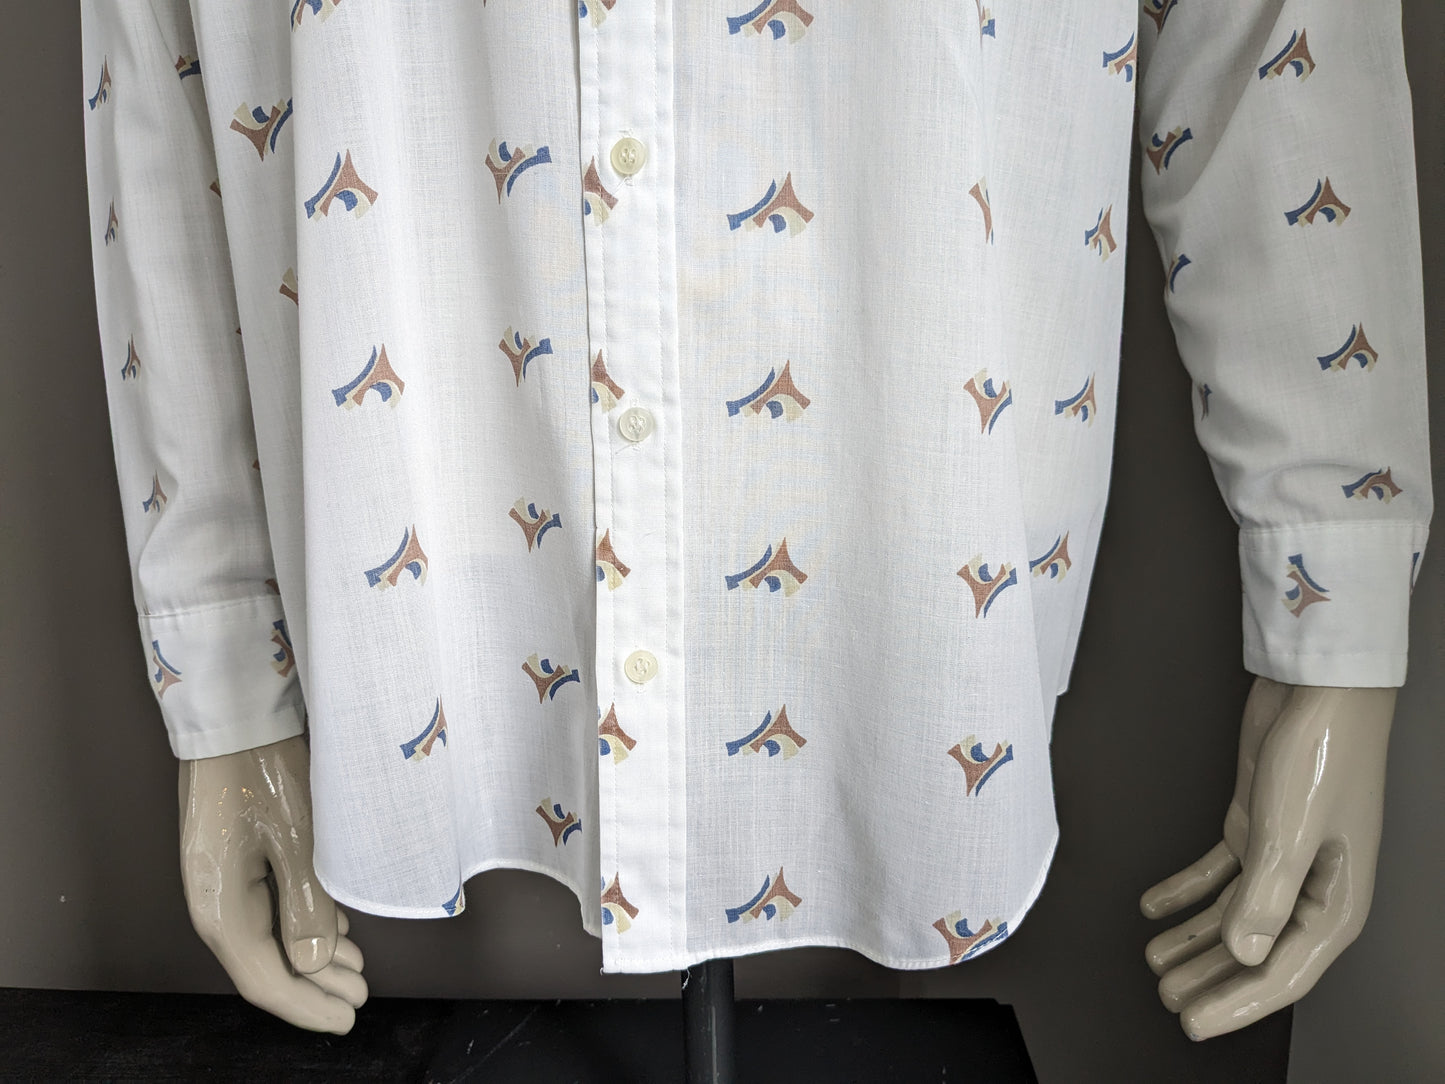 Vintage Pickwick 70er Hemd mit Punktkragen. Weißes braunes Blauprint. Größe 2xl / xxl.